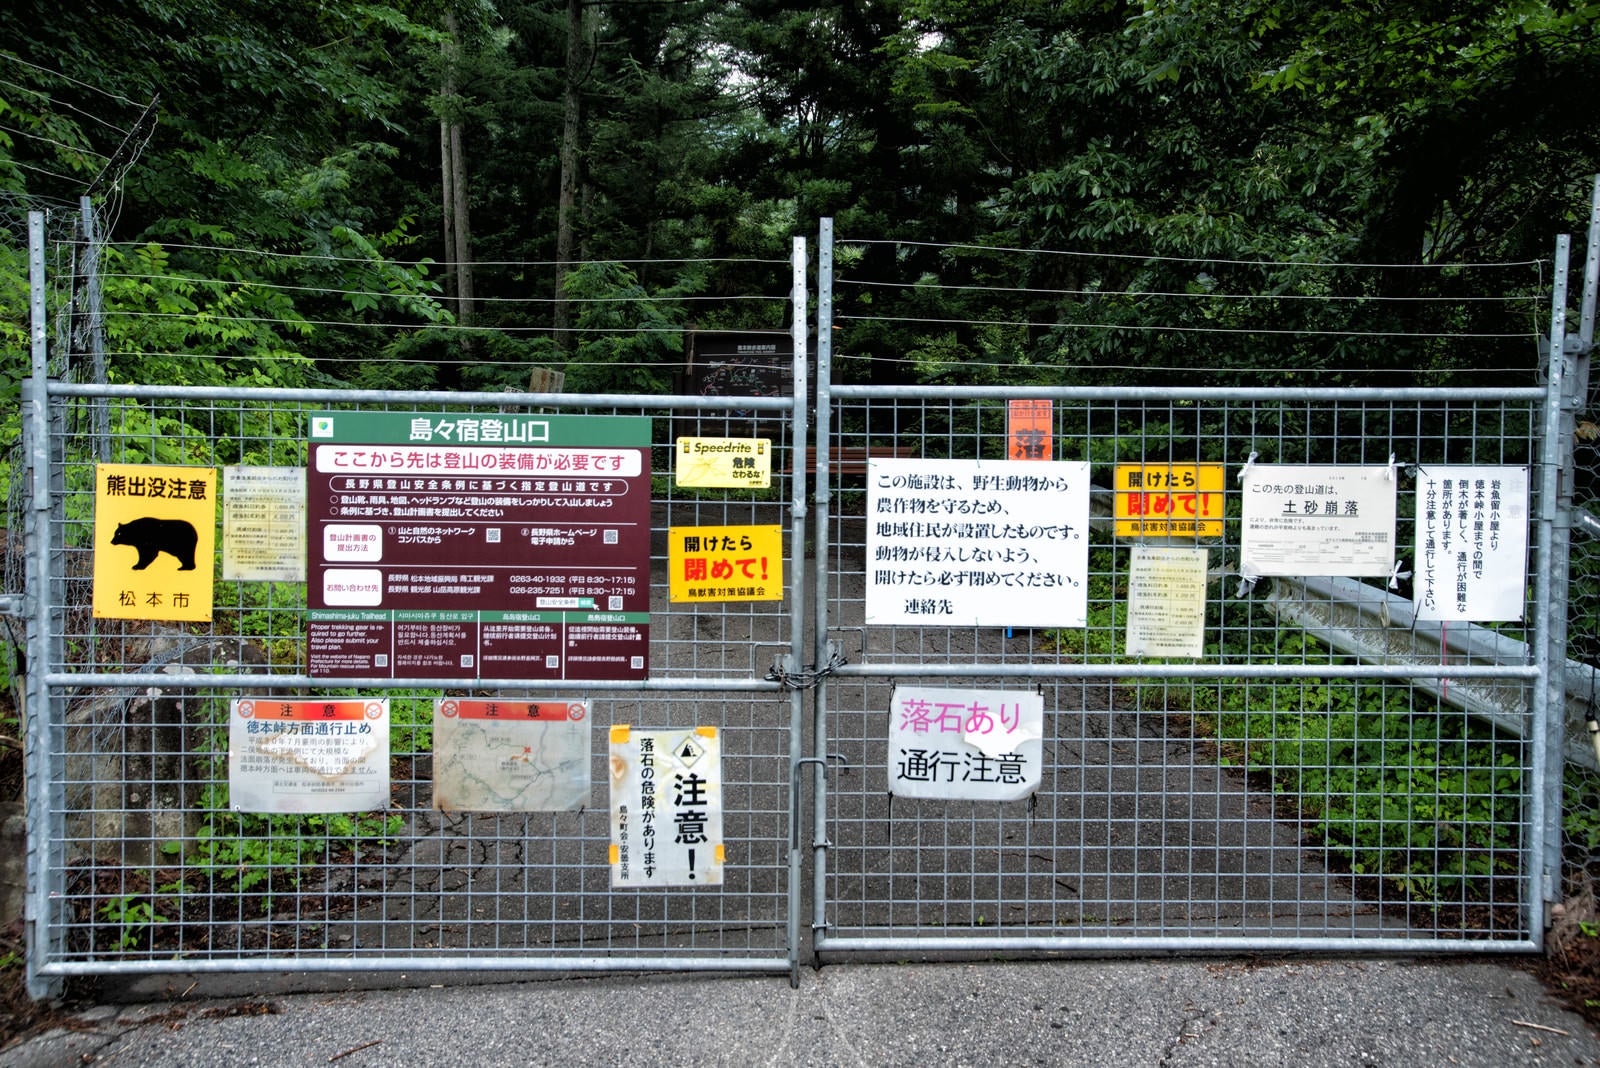 「徳本峠へ通じるゲートに取り付けられた警告の数々」の写真